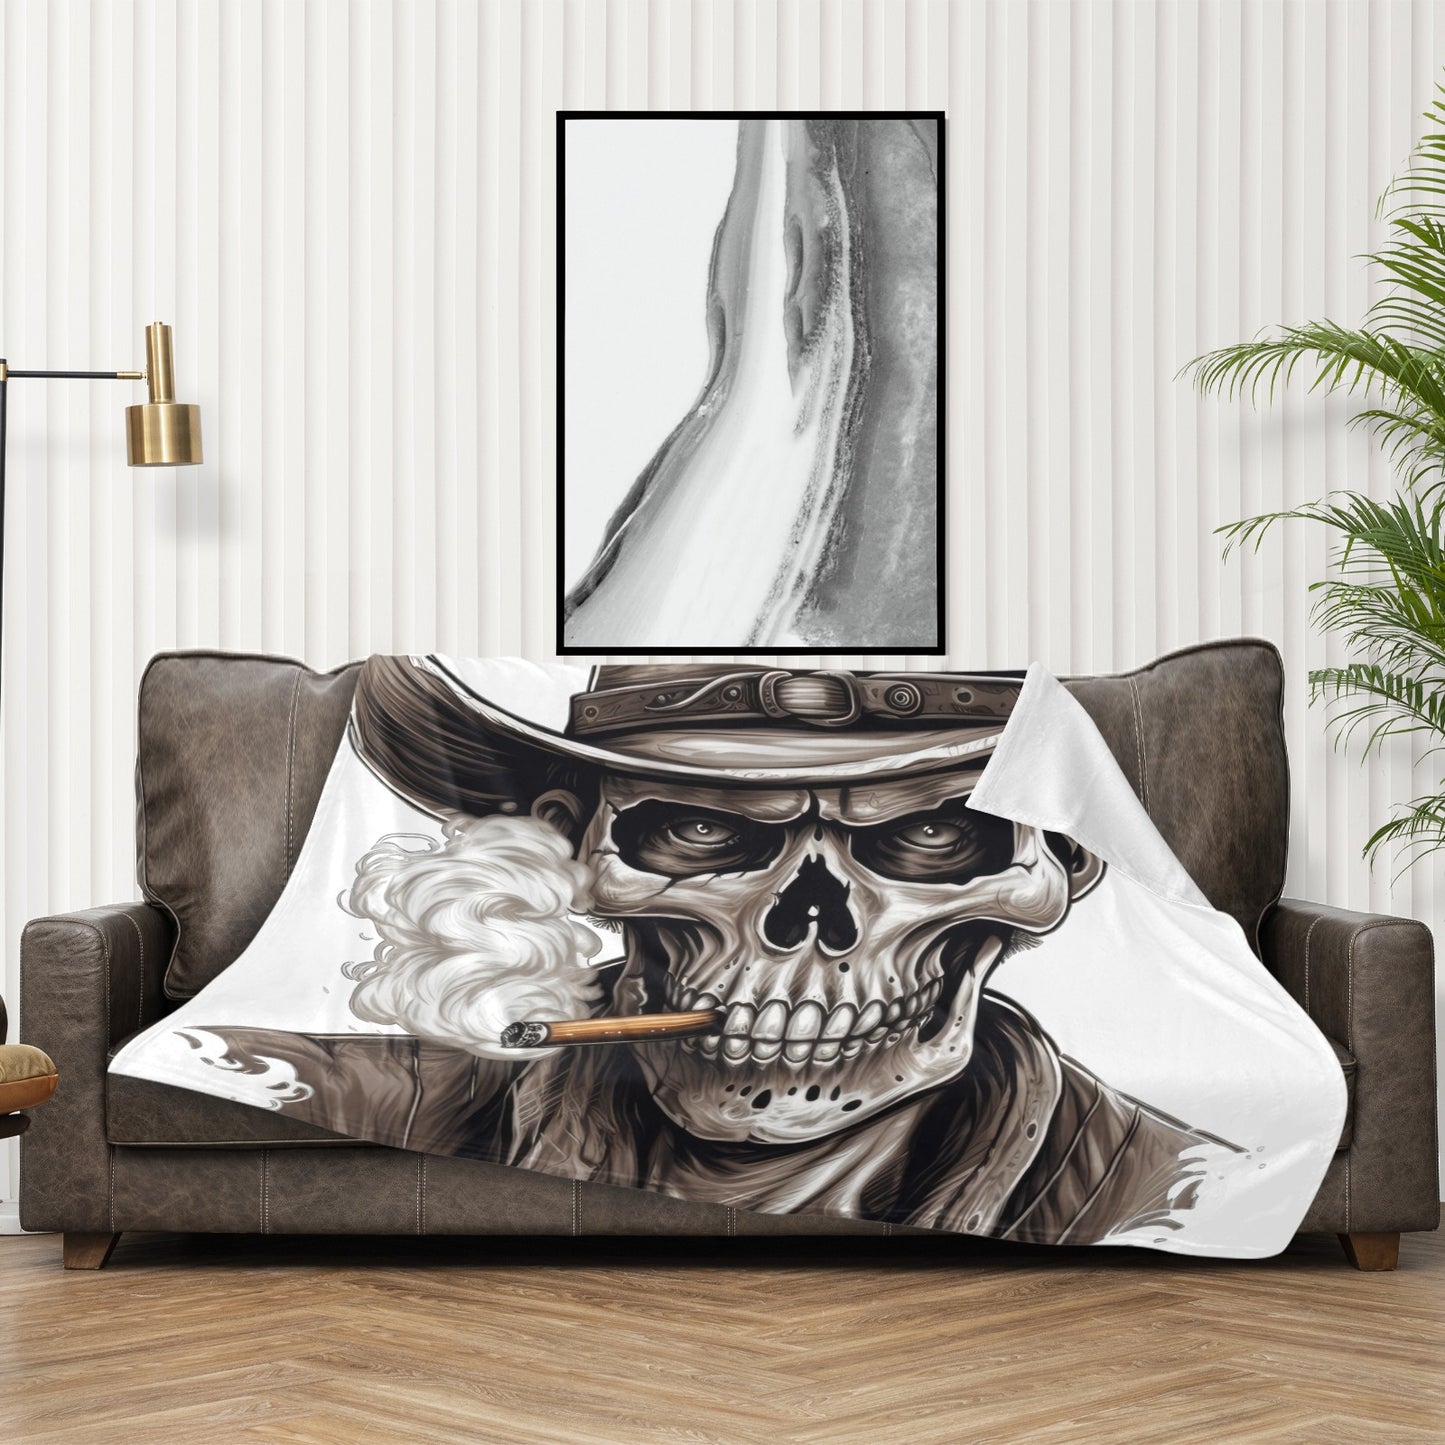 Sepia Cowboy Skeleton 50" x 60" Blanket Throw